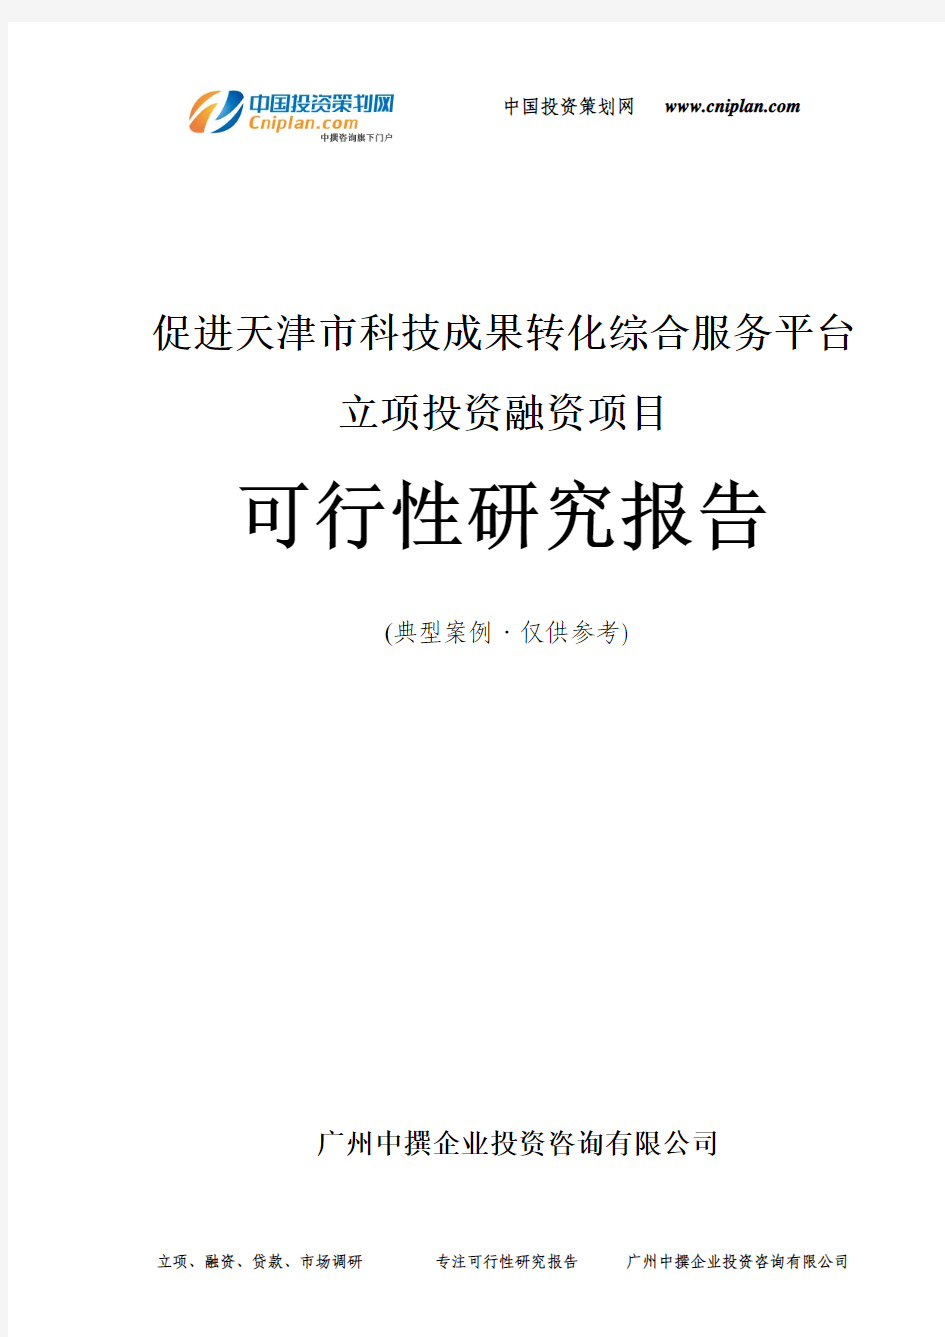 促进天津市科技成果转化综合服务平台融资投资立项项目可行性研究报告(中撰咨询)